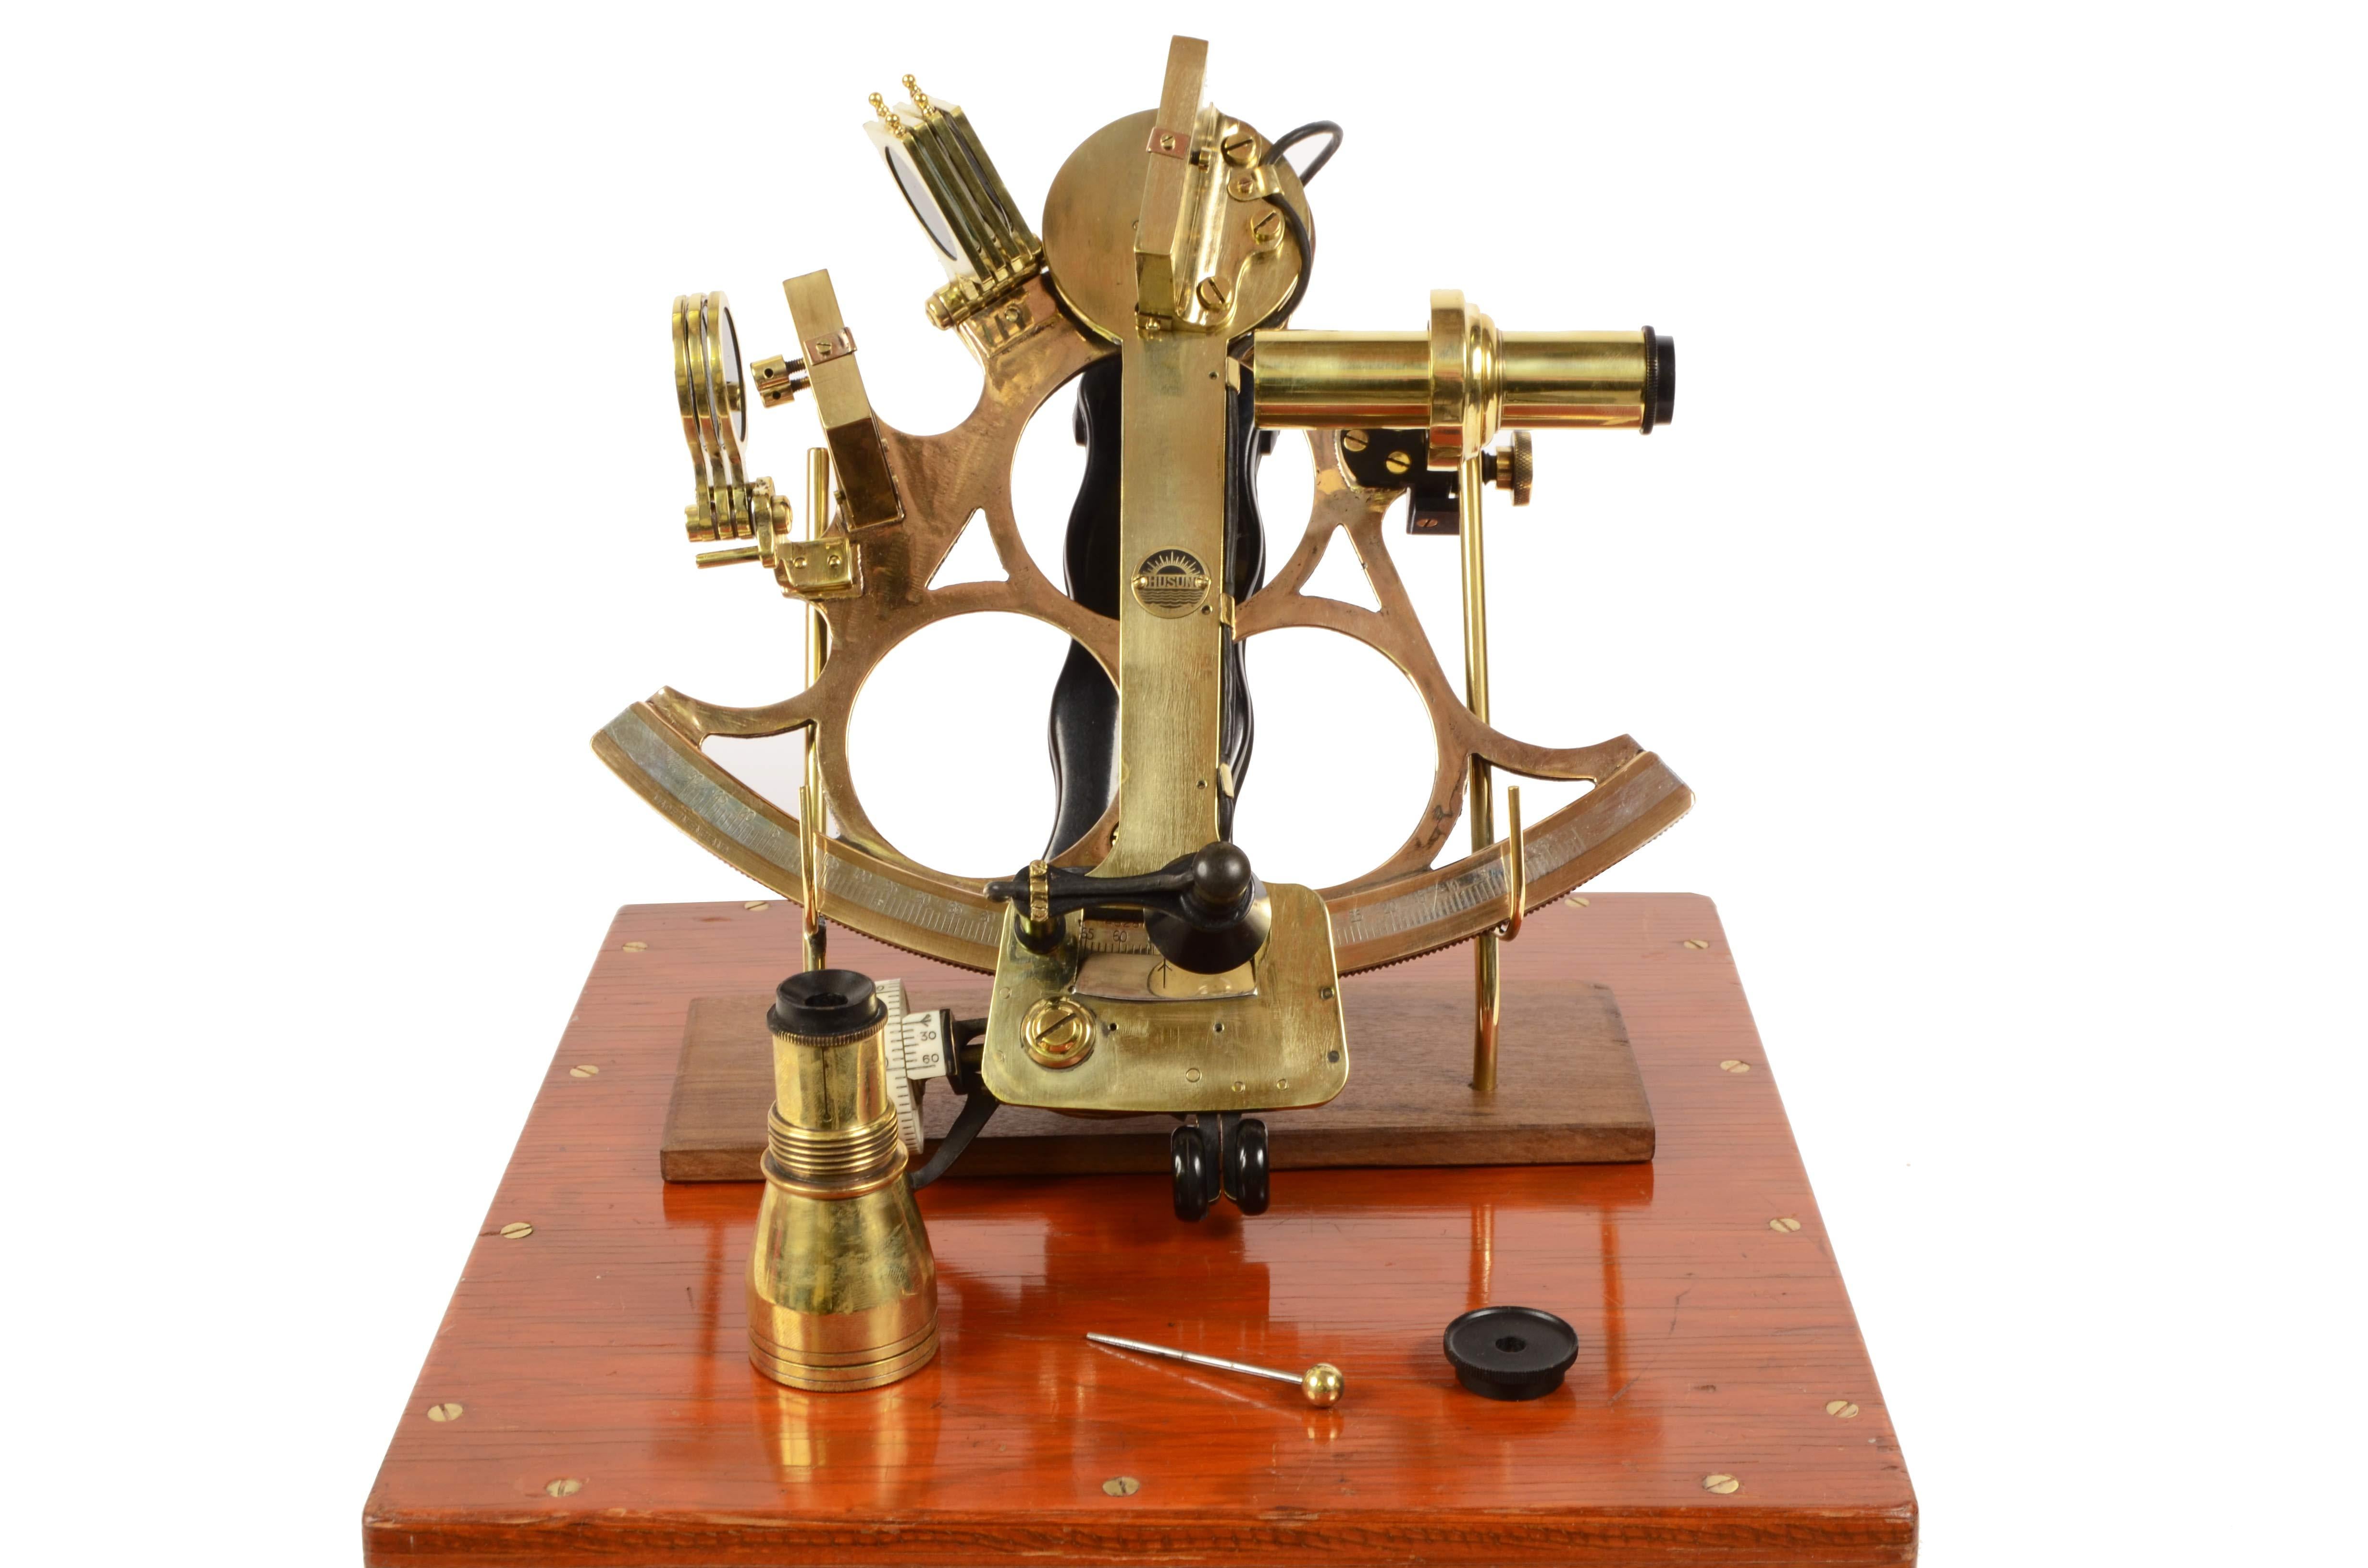 1930er Jahre Sextant aus Messing, signiert mit der Marke Husun und hergestellt von H. Hughes & Son Ltd, einem Unternehmen, das seit etwa 250 Jahren tätig und auf die Herstellung nautischer Instrumente spezialisiert war; das Instrument ist komplett